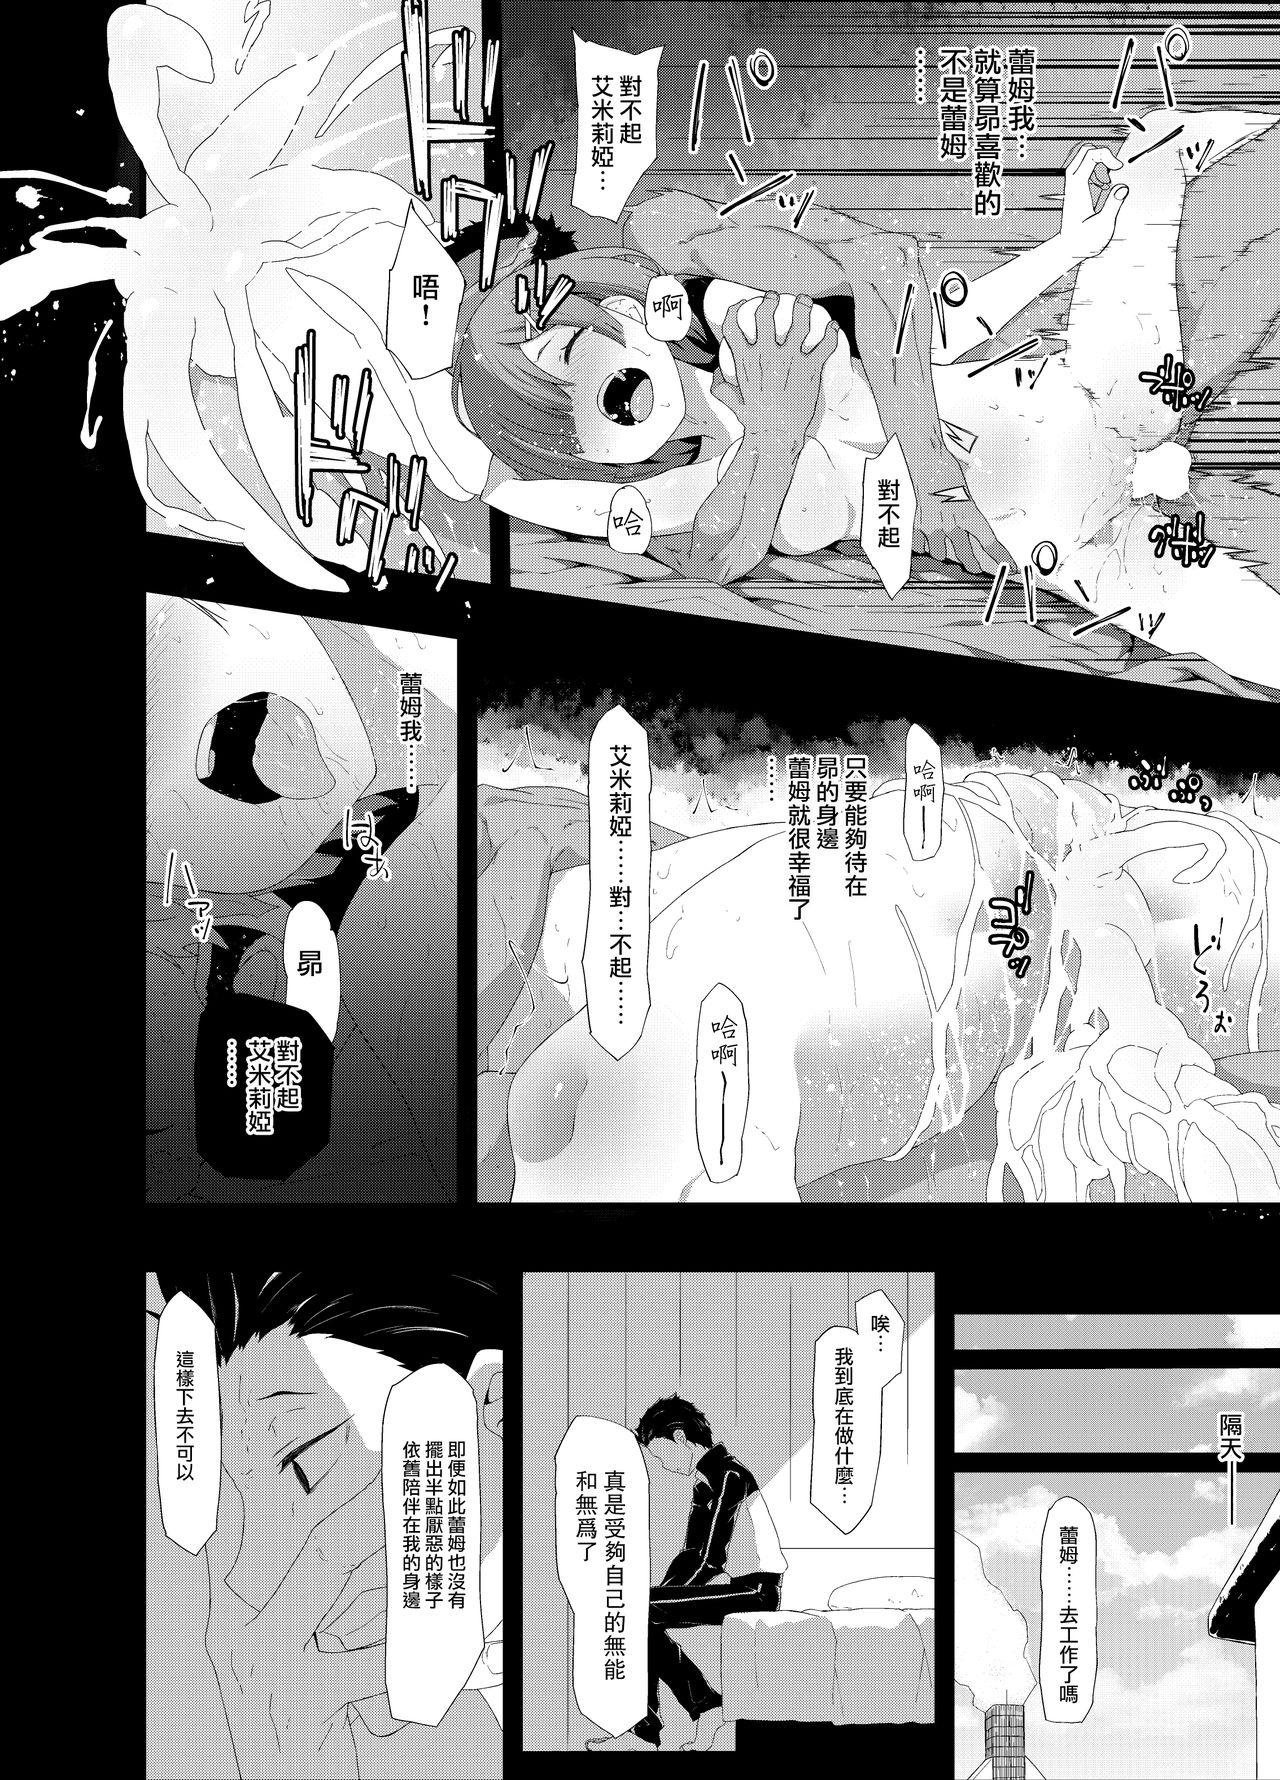 Young Petite Porn Natsuki Rem - Re zero kara hajimeru isekai seikatsu Real Sex - Page 4